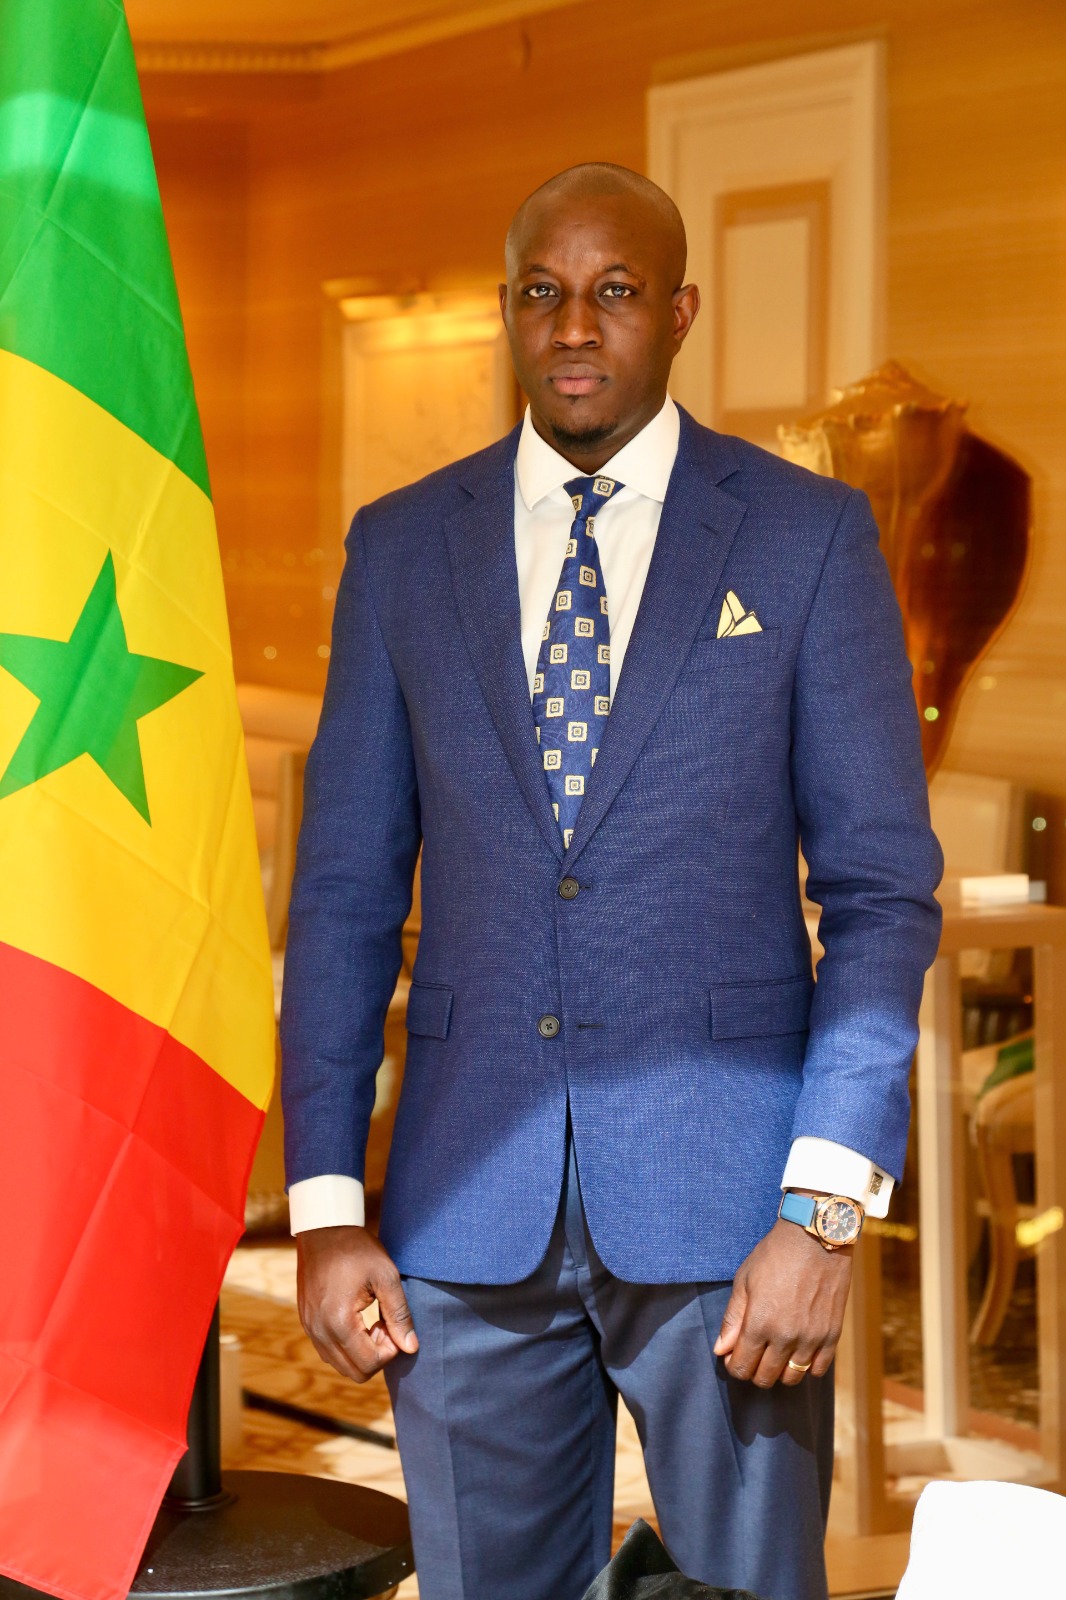 Discours de Mohamet B Diallo allias Mo Gates pour une reléve de l'opposition au Sénégal face au régime actuel